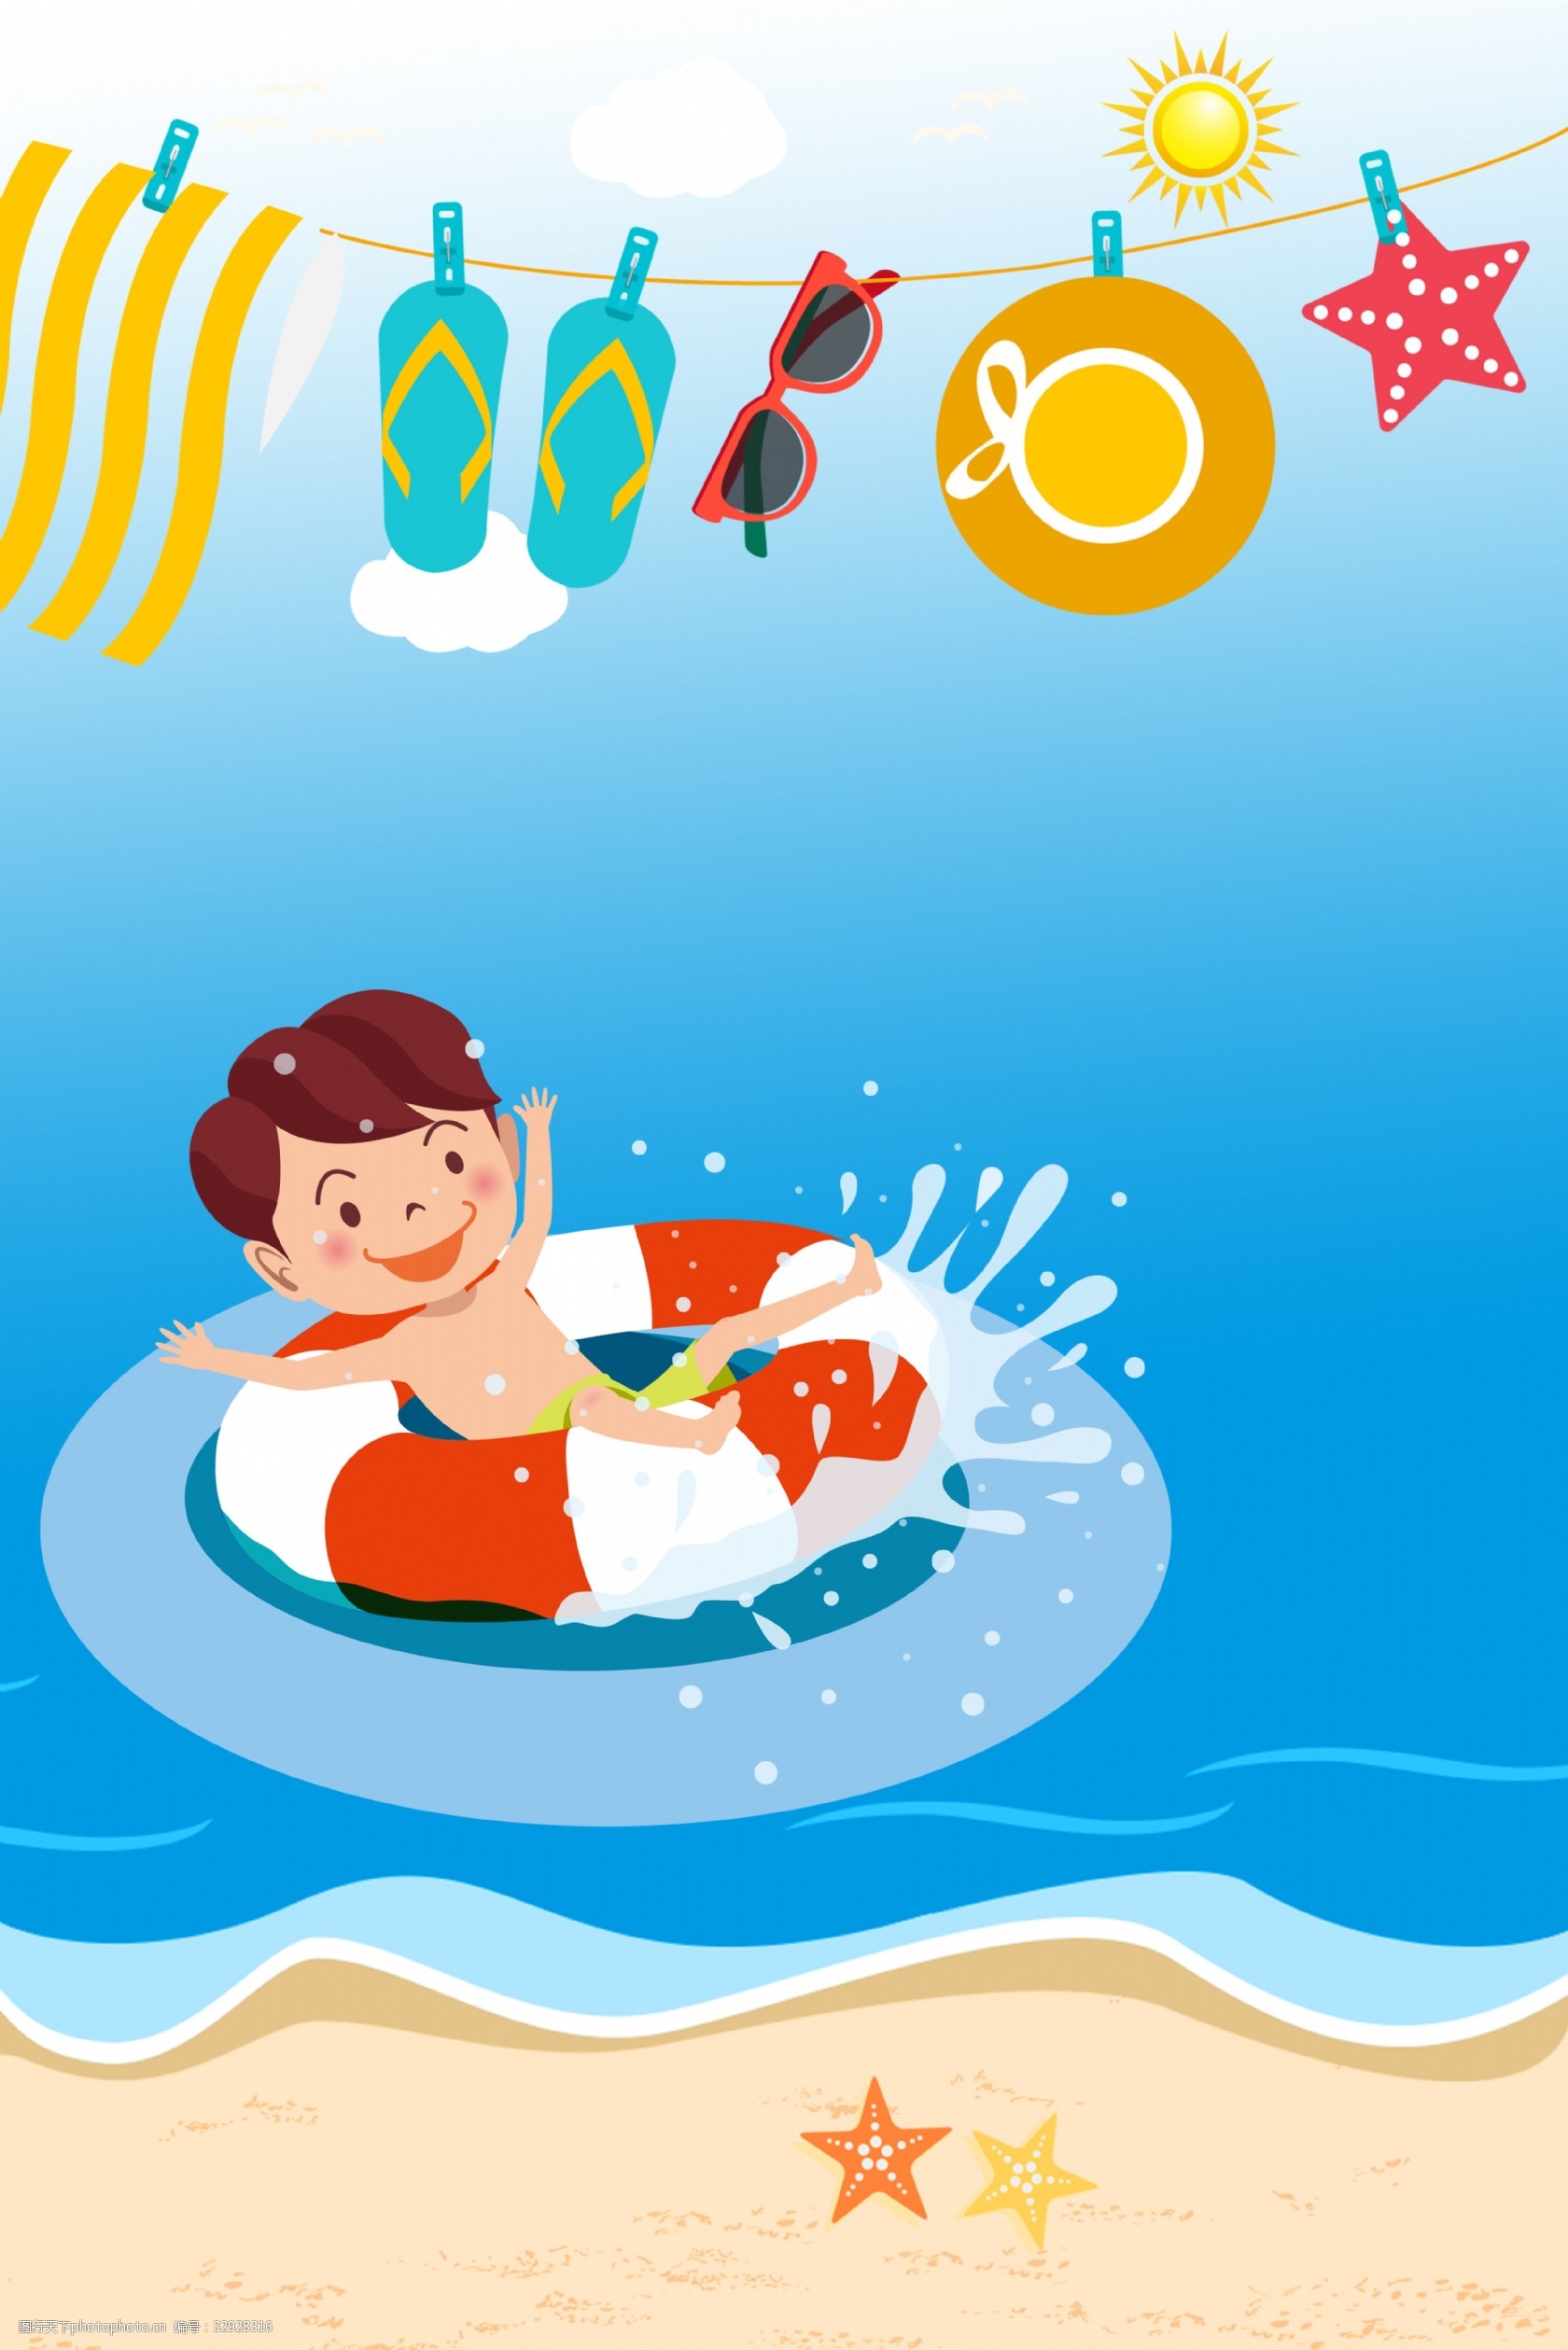 关键词:夏日儿童戏水背景 卡通手绘少儿游泳 游泳圈 夏天 夏季 夏日